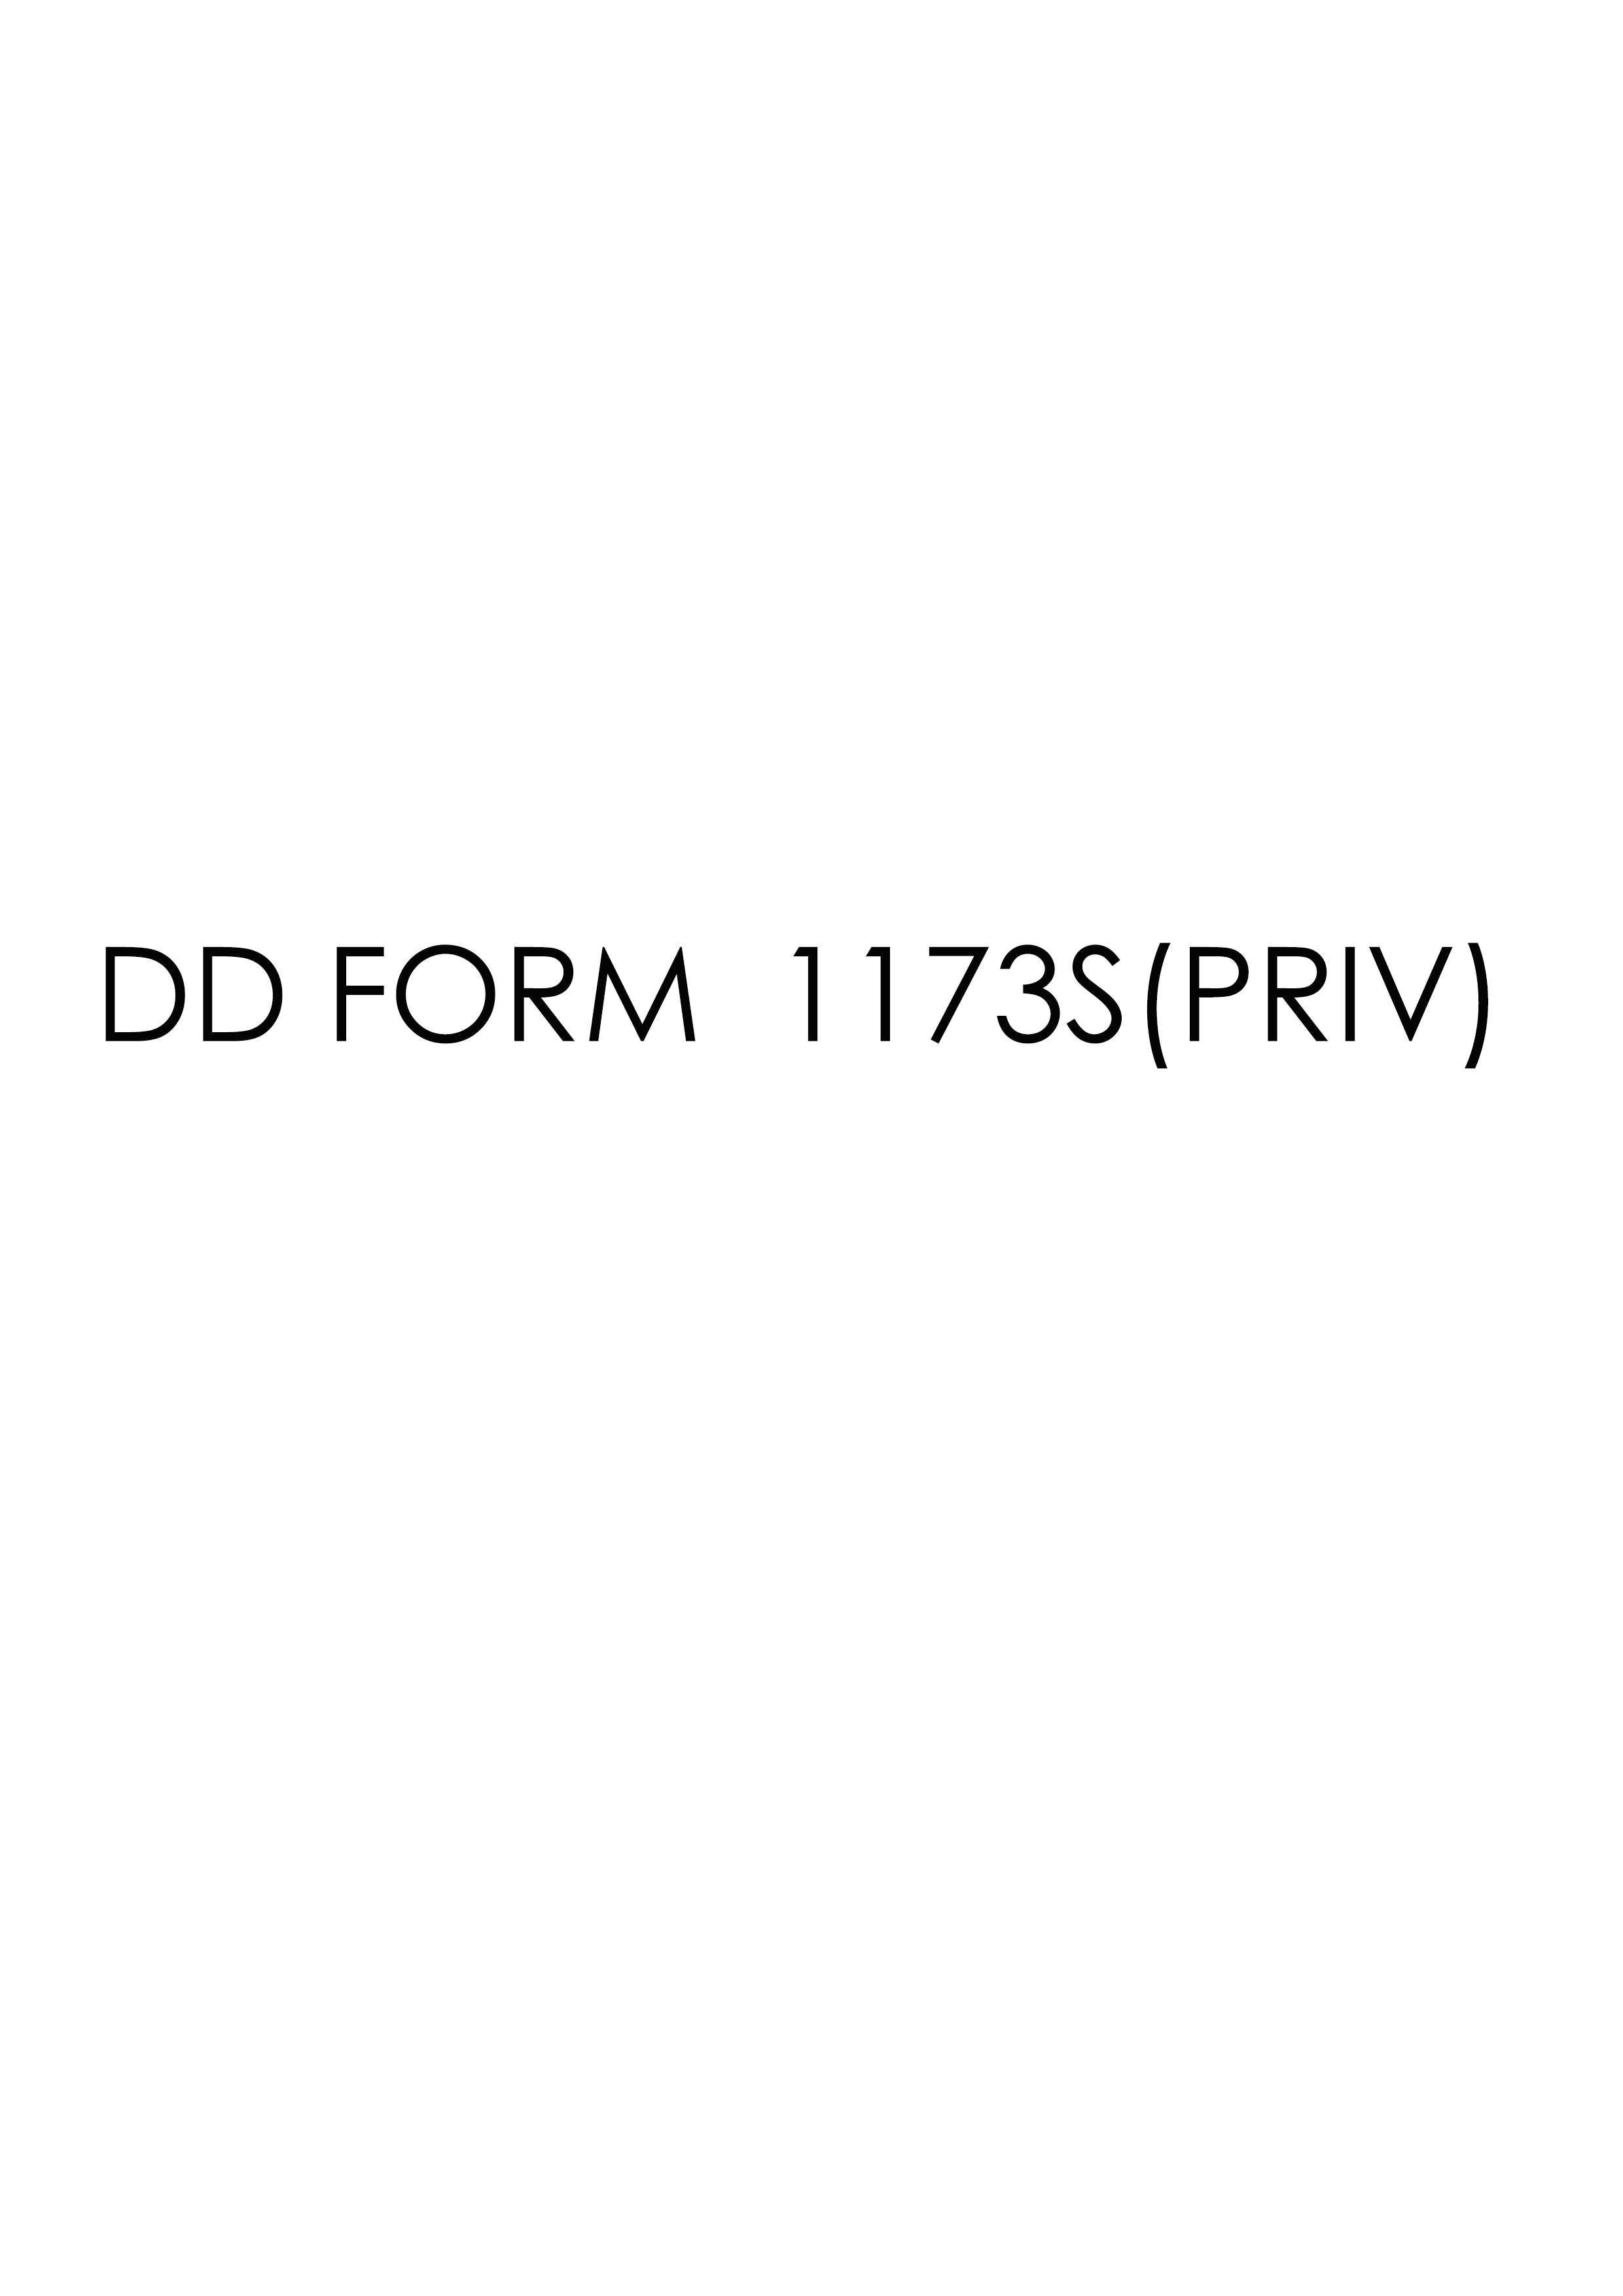 Download dd 1173S(PRIV) Form